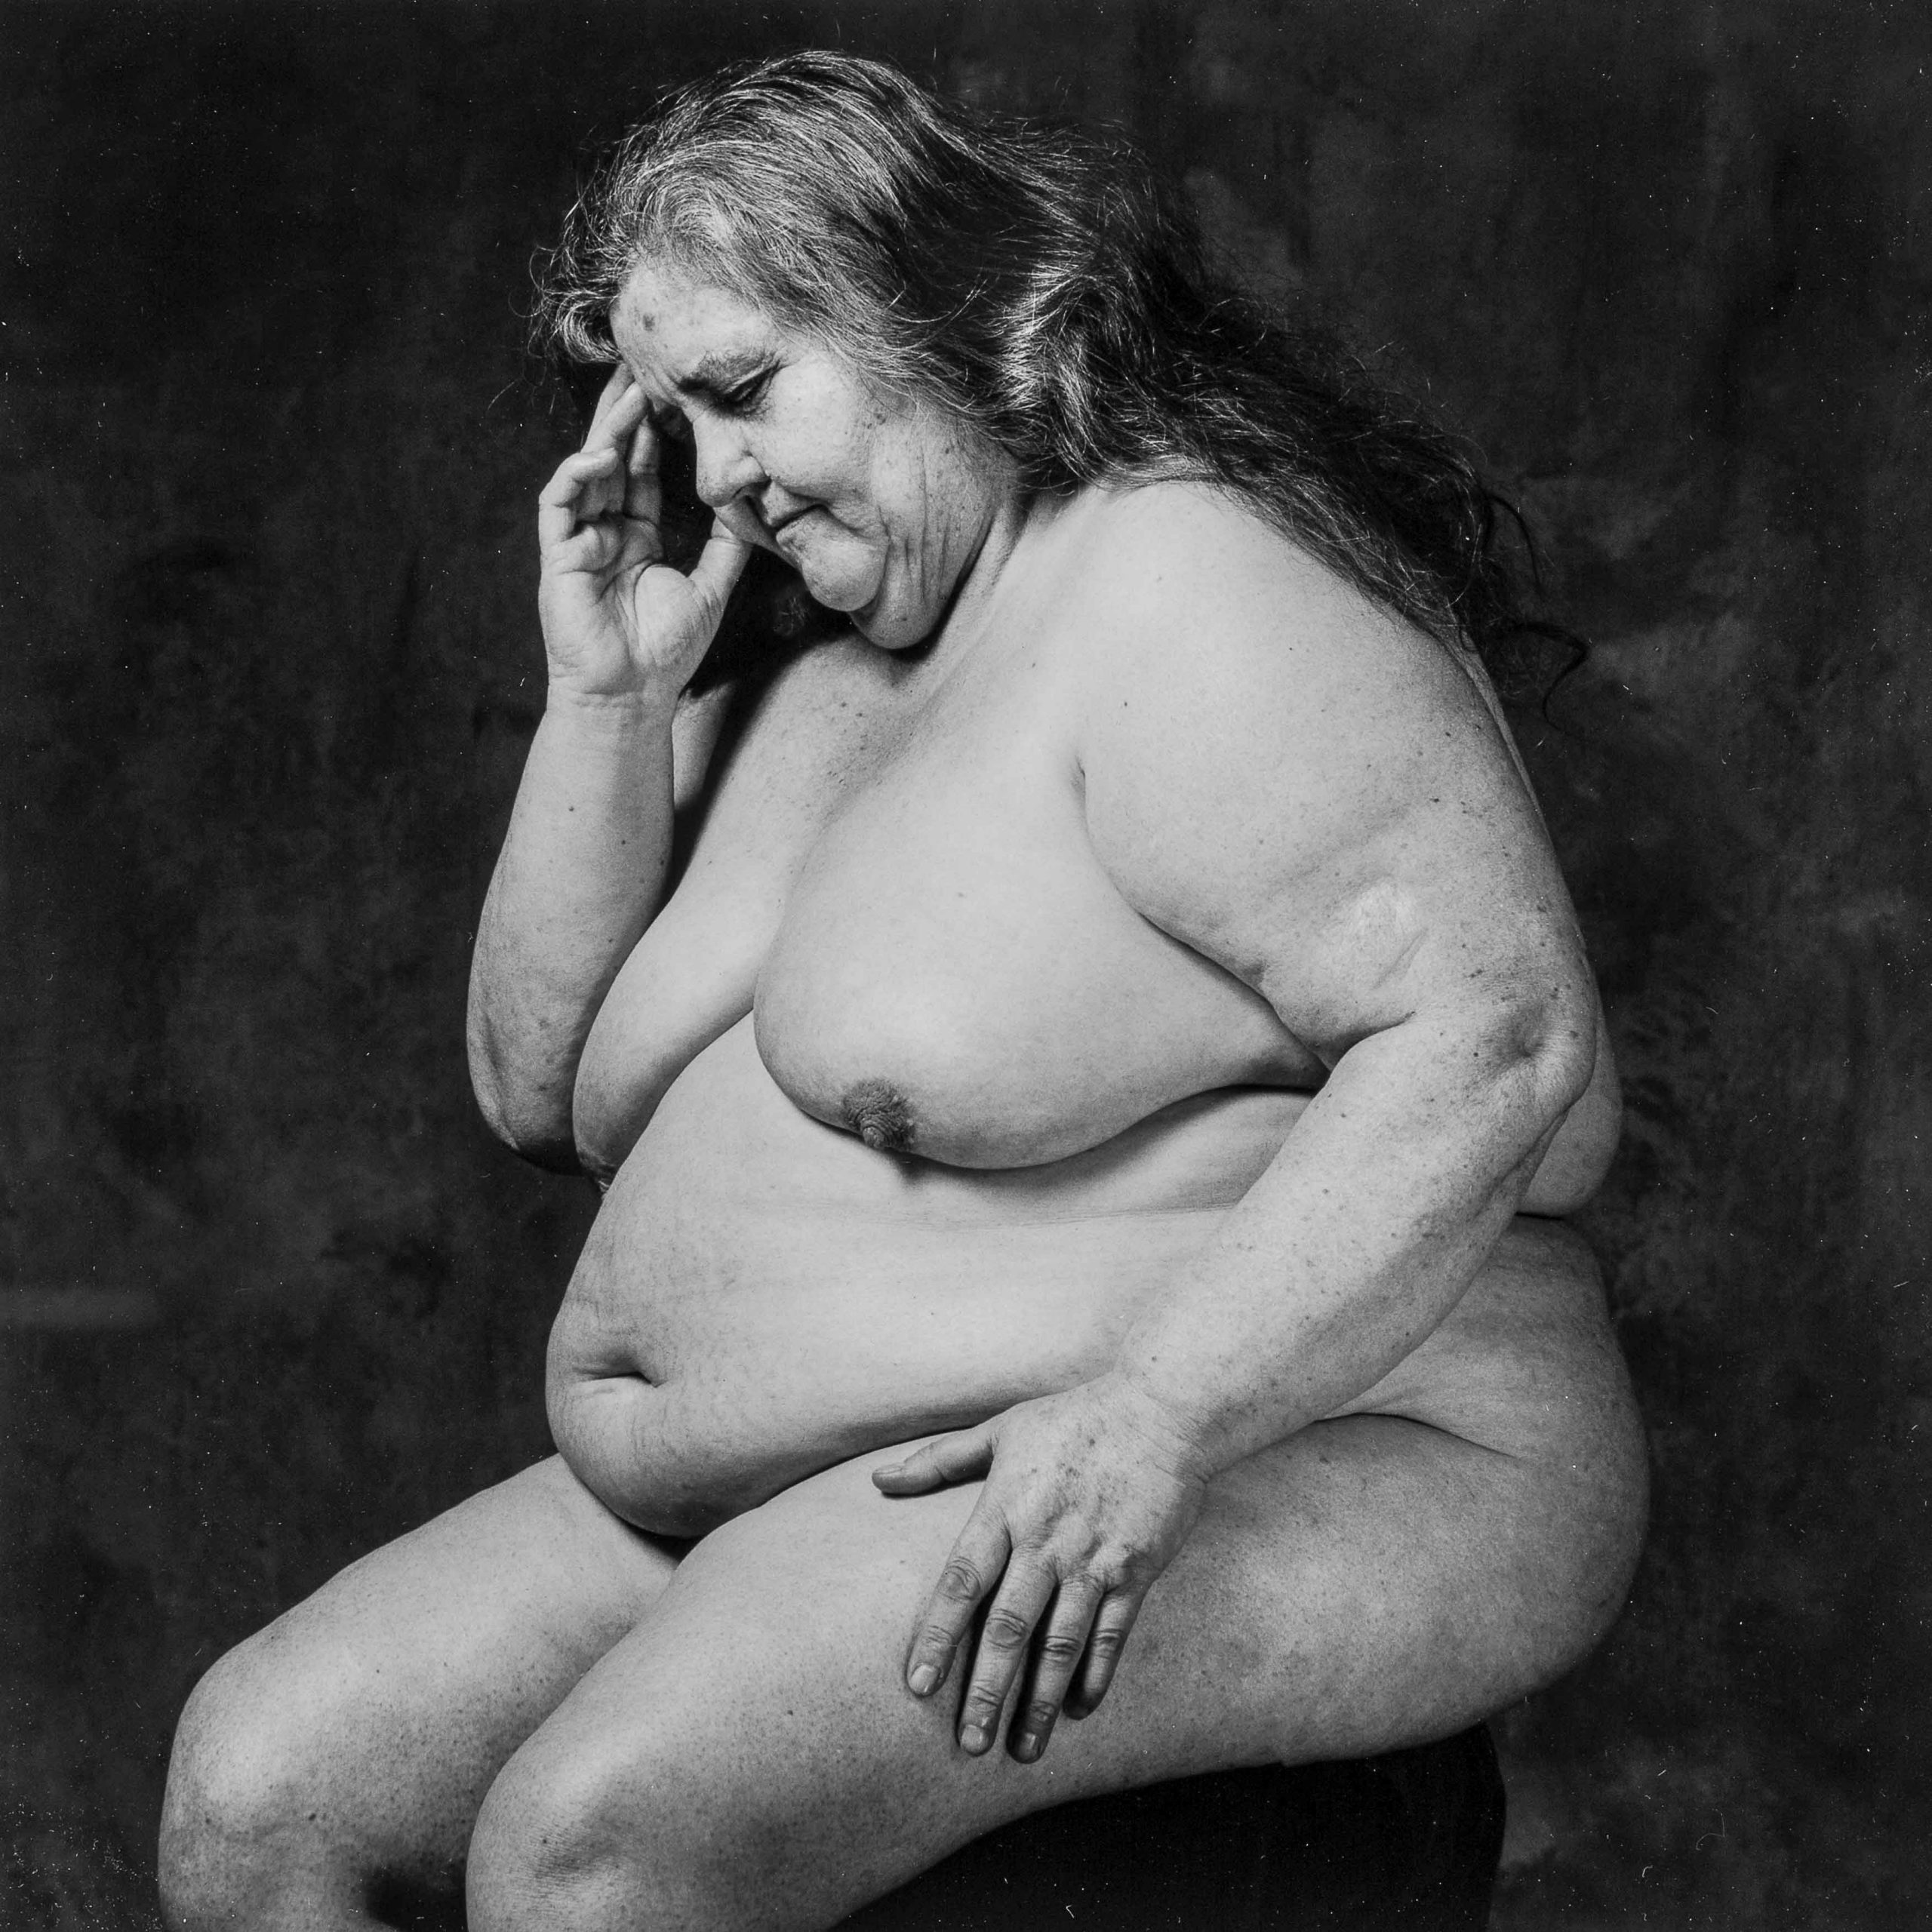 Plano americano, blanco y negro. Mujer desnuda, con sobrepeso mórbido, sentada en actitud que recuerda al pensador de Rodin.